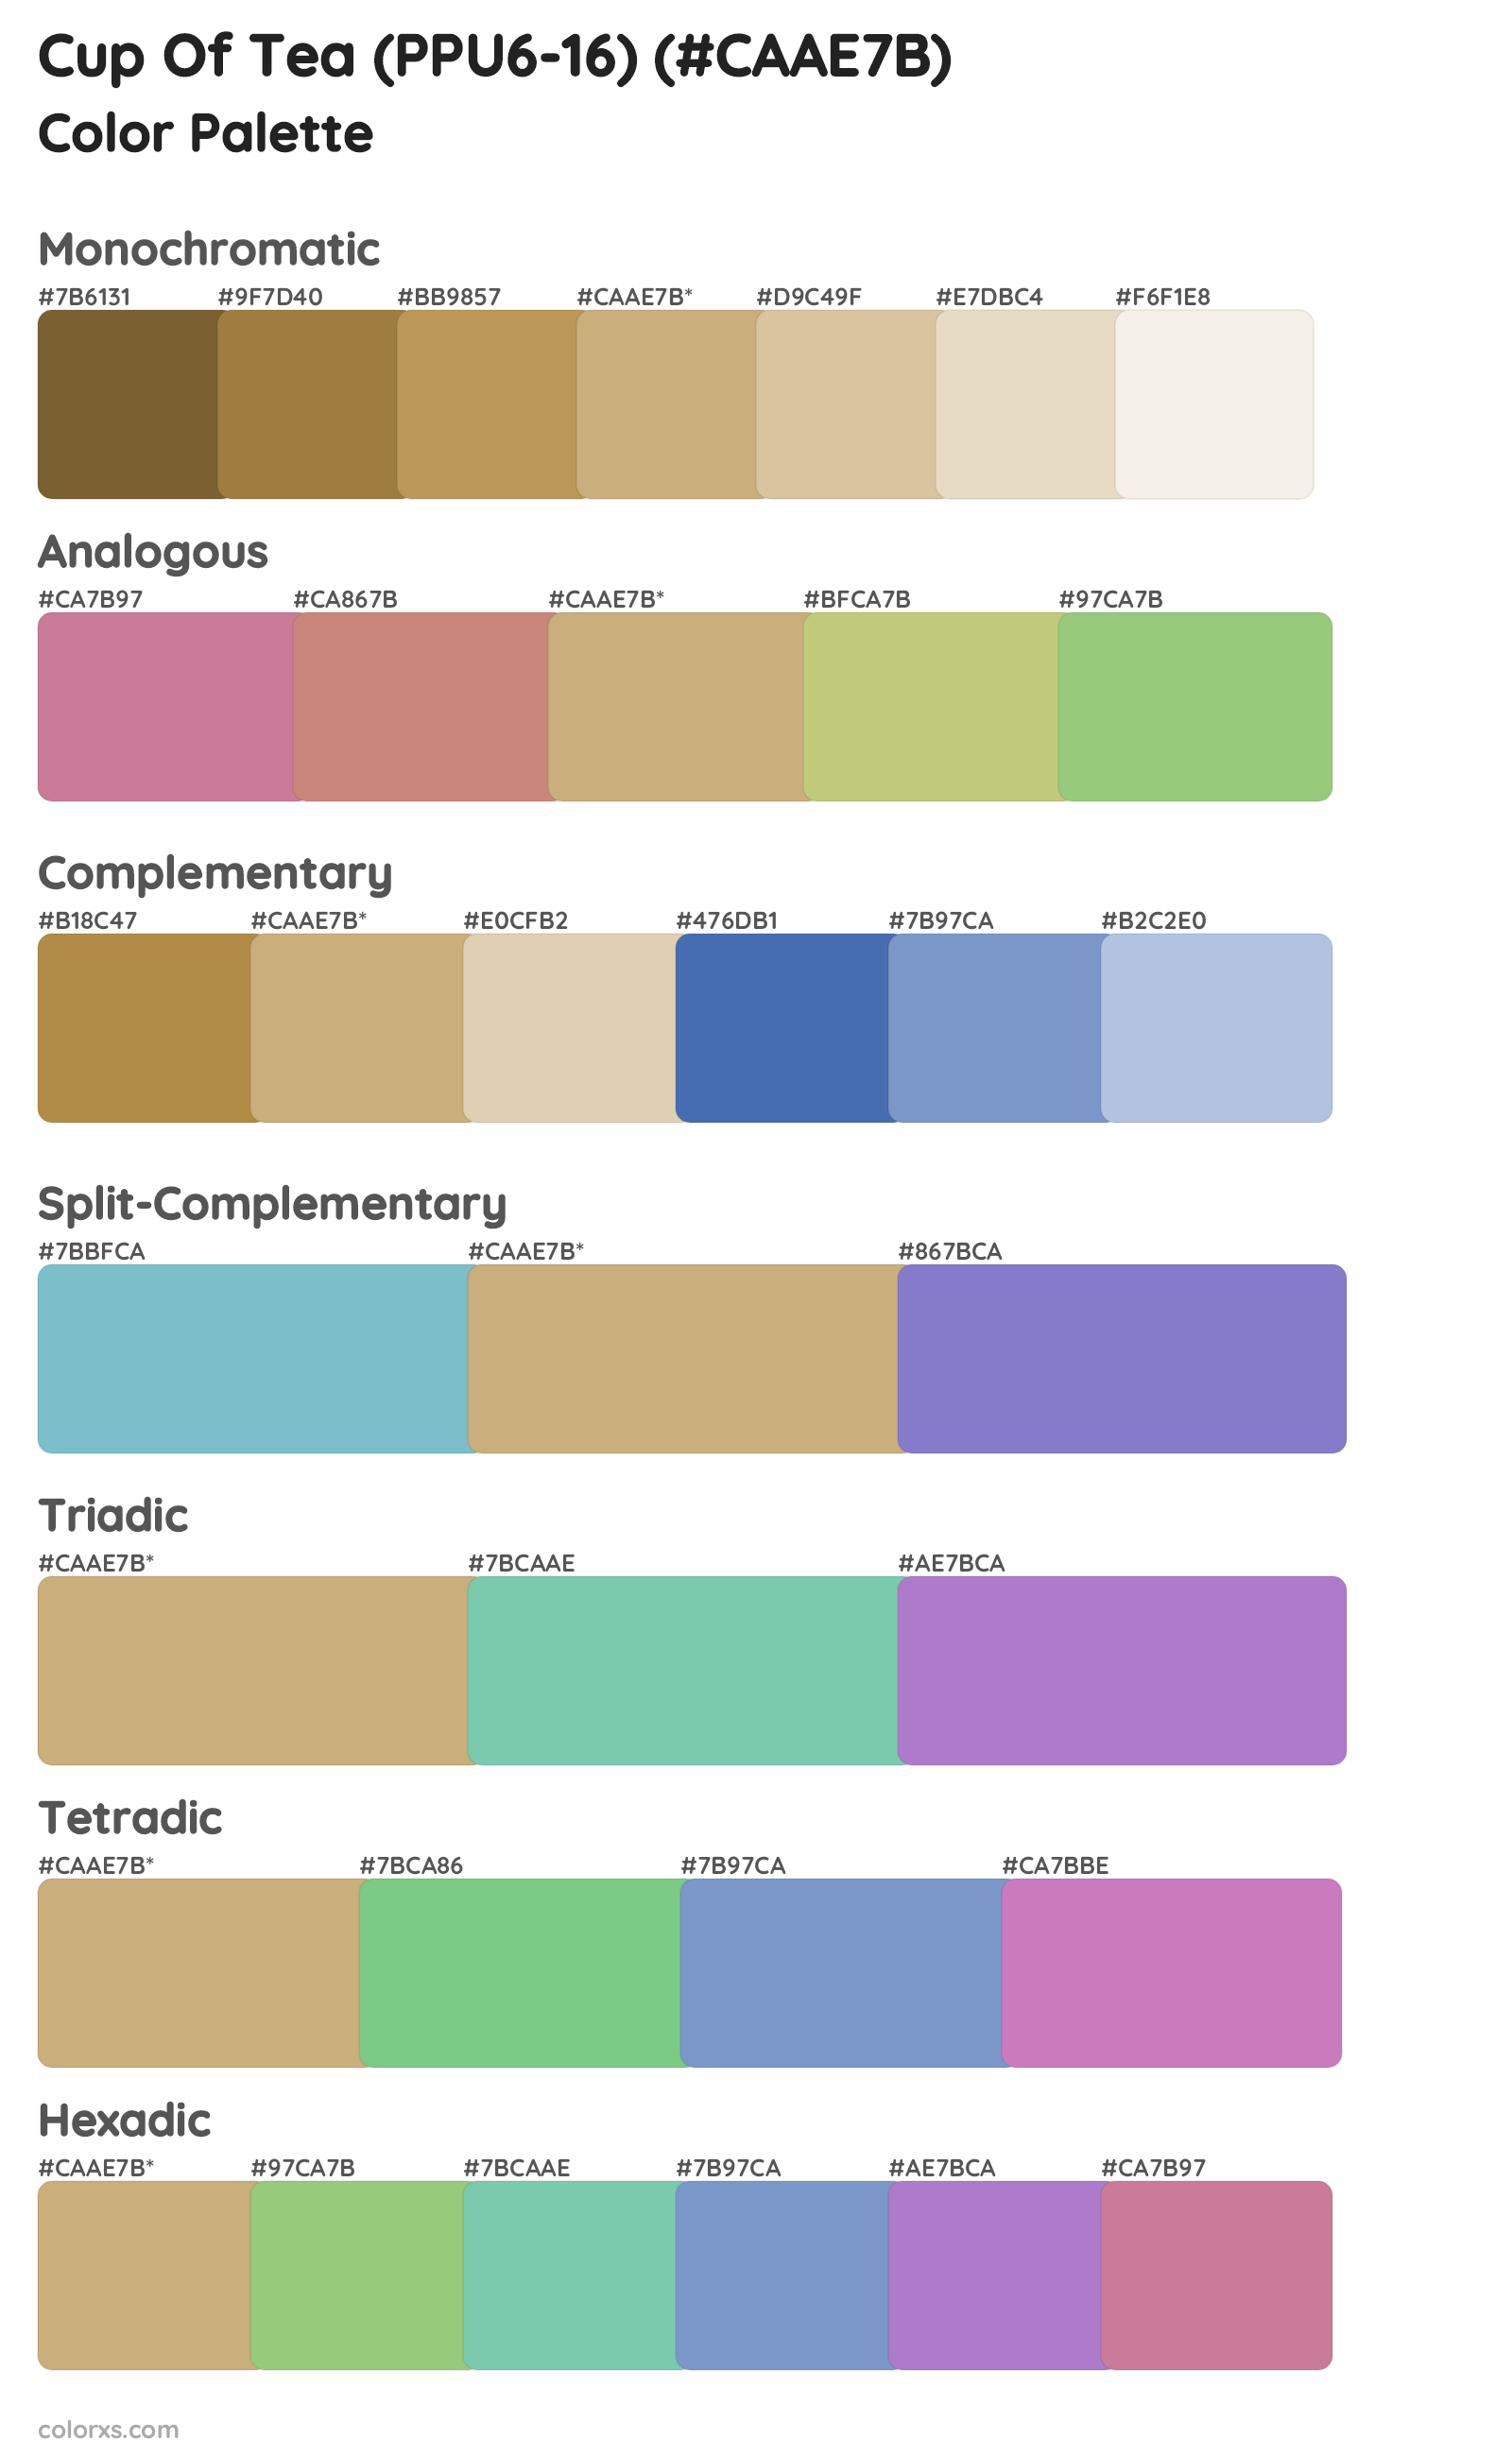 Cup Of Tea (PPU6-16) Color Scheme Palettes